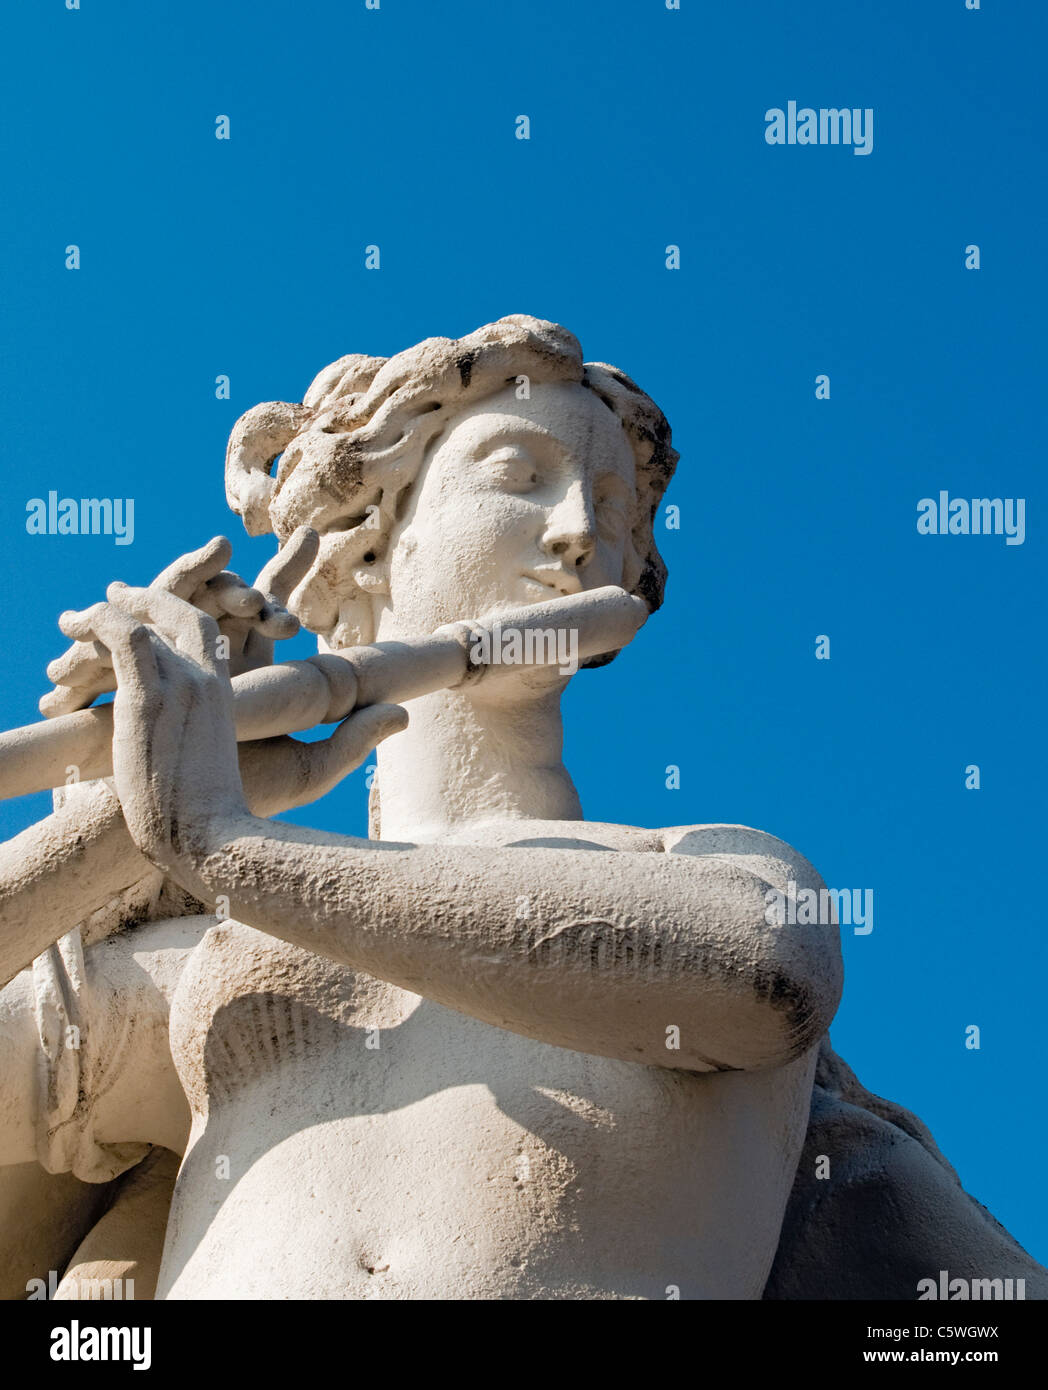 La sculpture baroque de joueur de flûte dans le jardin du château du Belvédère, Vienne (Wien, Autriche) Banque D'Images